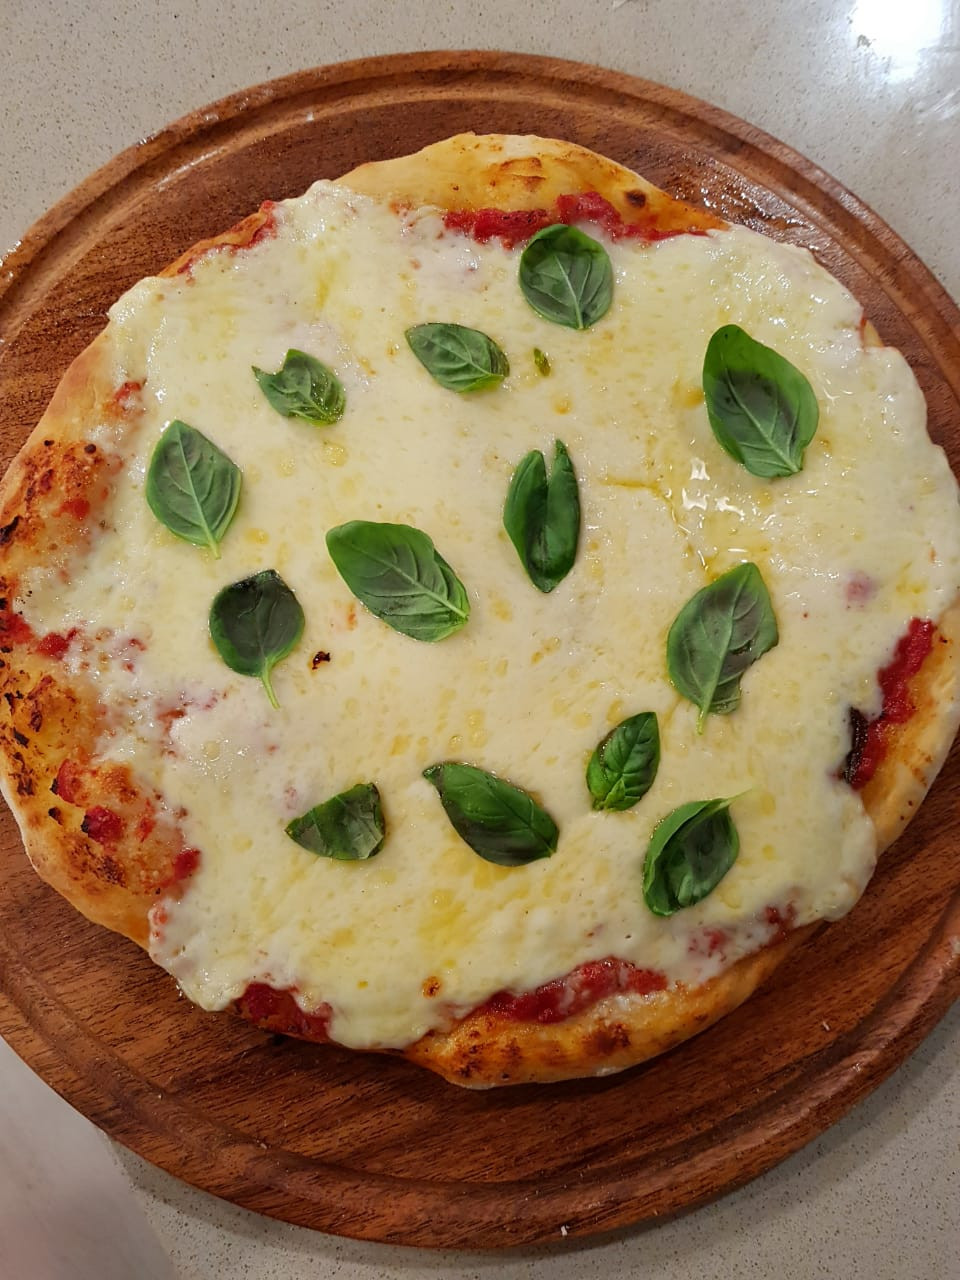 Pizza a la piedra: desde la masa hasta la cocción